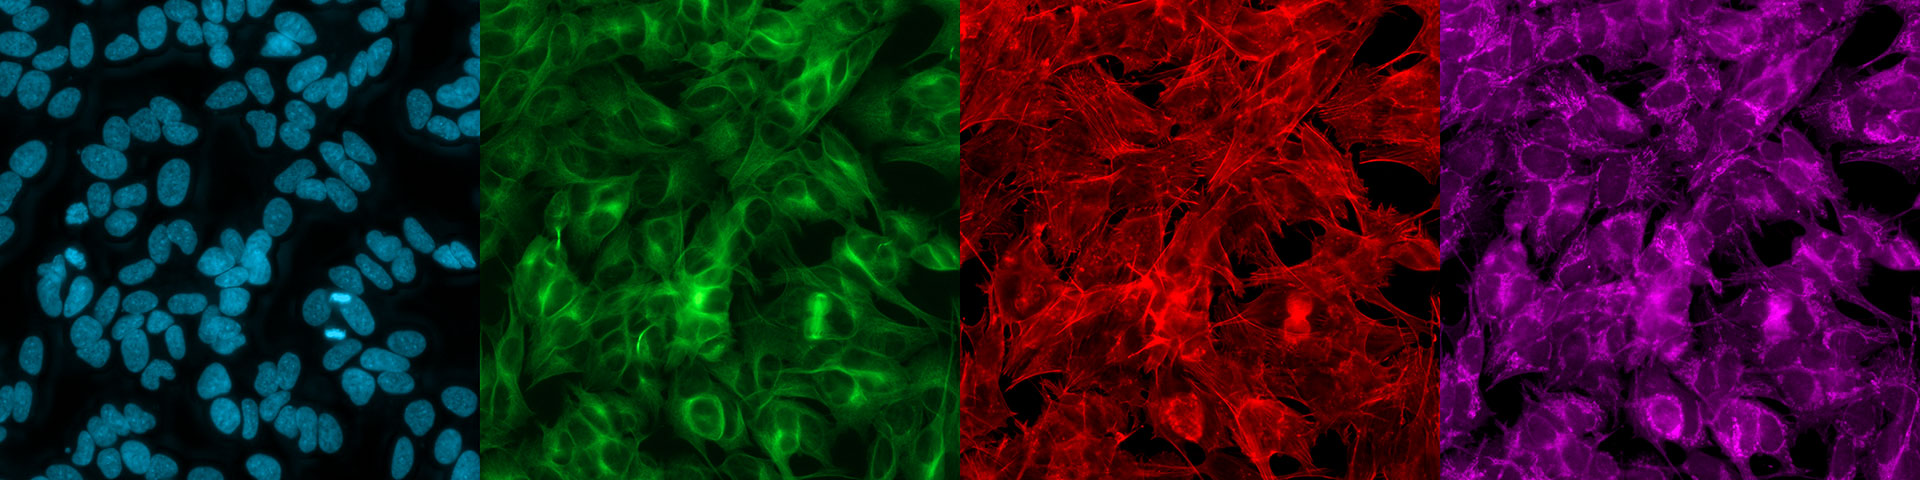 Hoechst – cromatina (azul), FITC de anticuerpos anti alfa tubulina para alfa tubulina (verde), faloidina para actina (rojo), MitoTracker Deep Red para mitocondrias (morado).  Muestra cortesía de P. Denner, Instalaciones de investigación, Centro Alemán de Enfermedades Neurodegenerativas (DZNE), Bonn, Alemania.